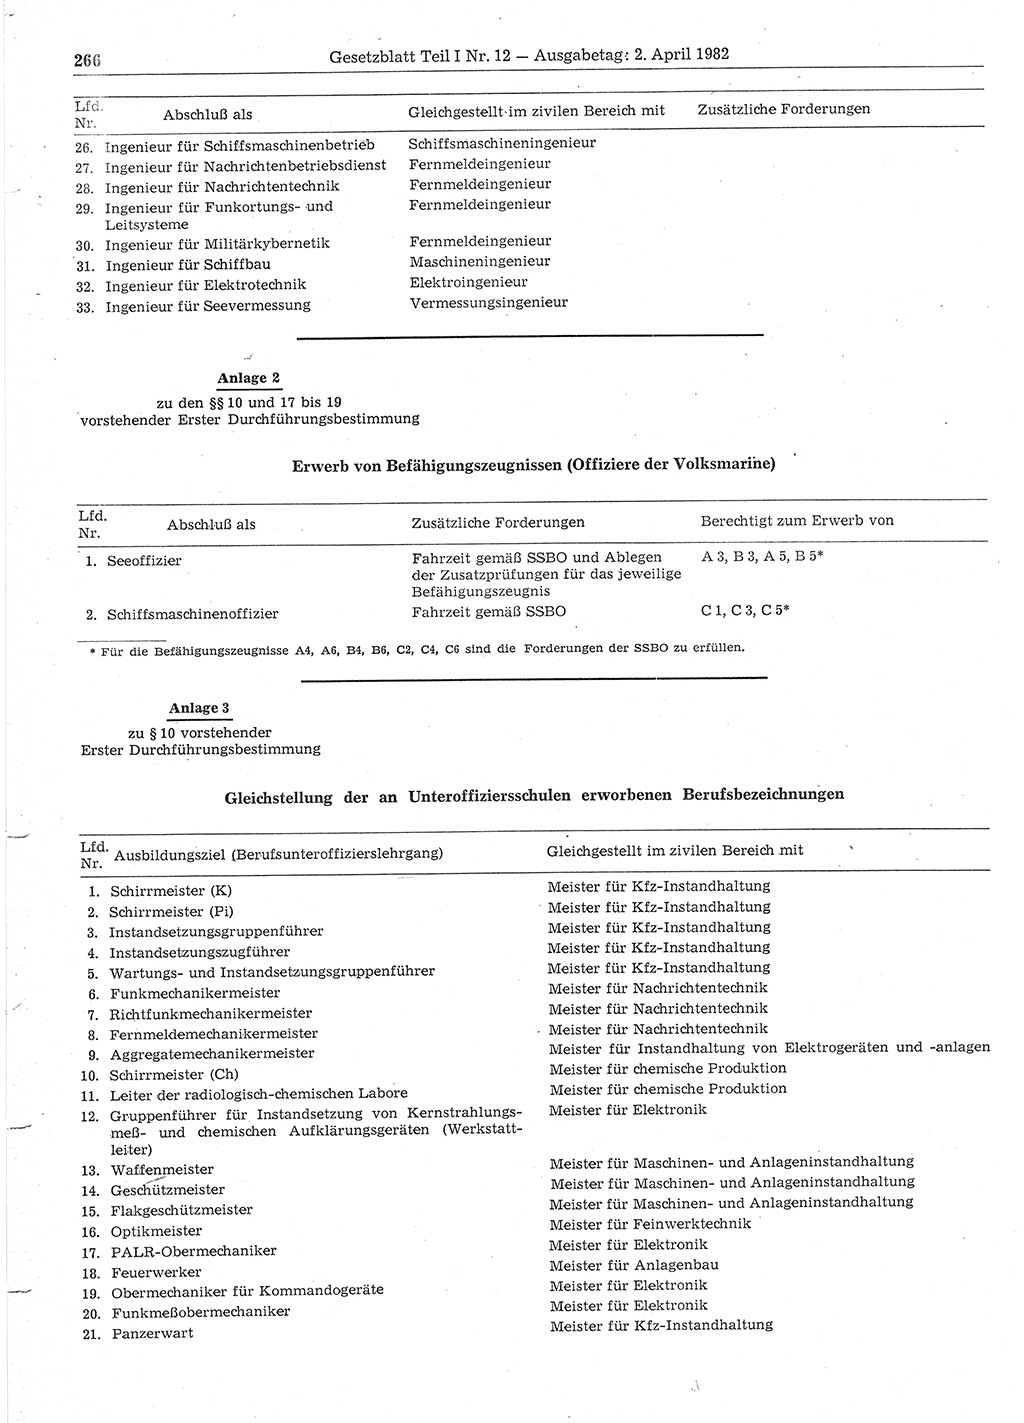 Gesetzblatt (GBl.) der Deutschen Demokratischen Republik (DDR) Teil Ⅰ 1982, Seite 266 (GBl. DDR Ⅰ 1982, S. 266)